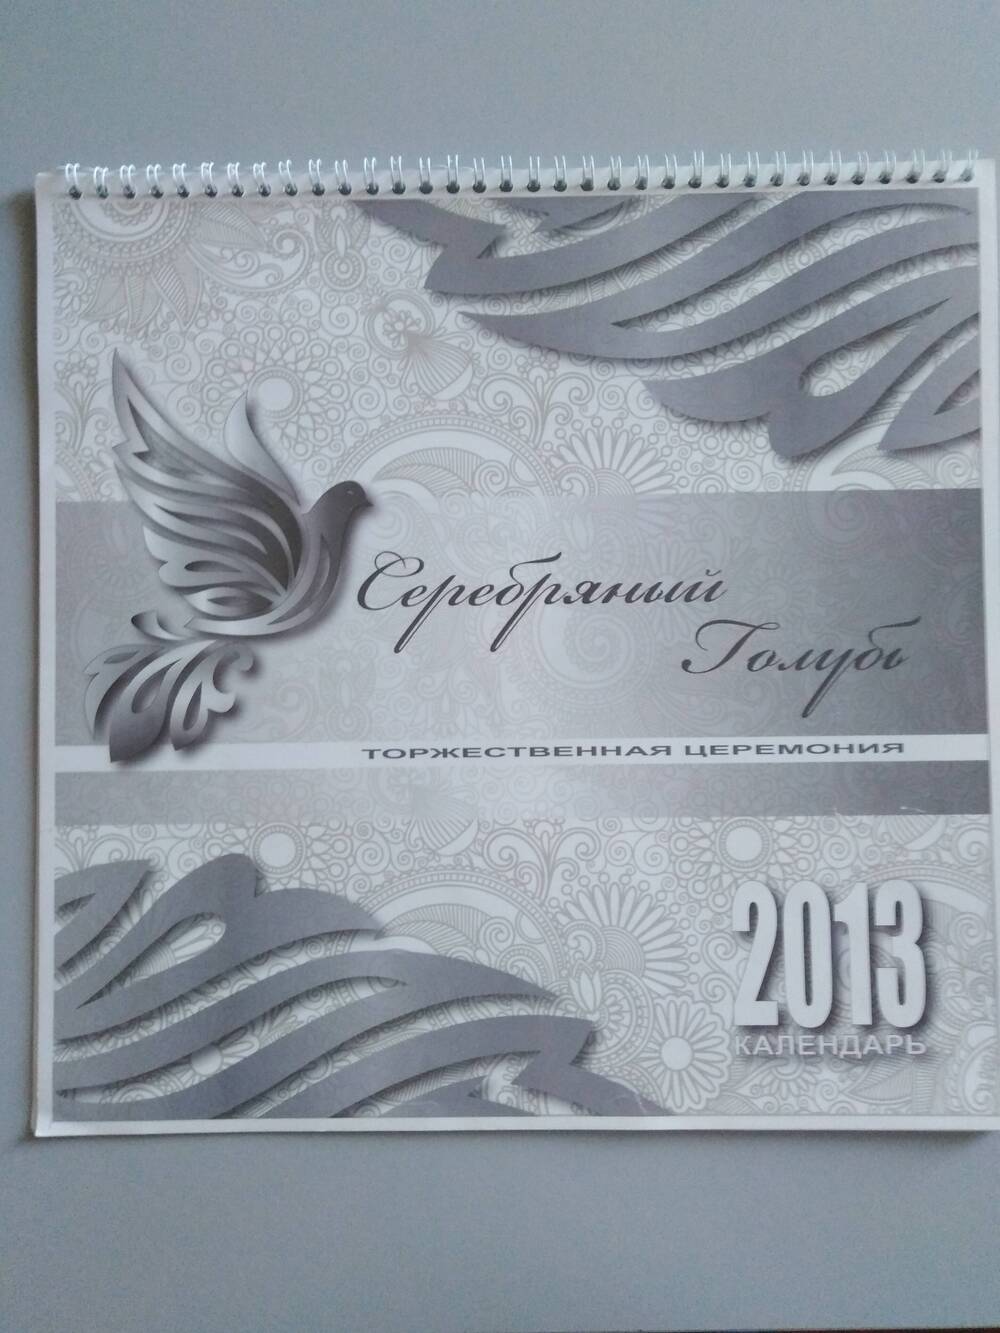 Альбом-календарь «Серебряный голубь» на 2013 г.